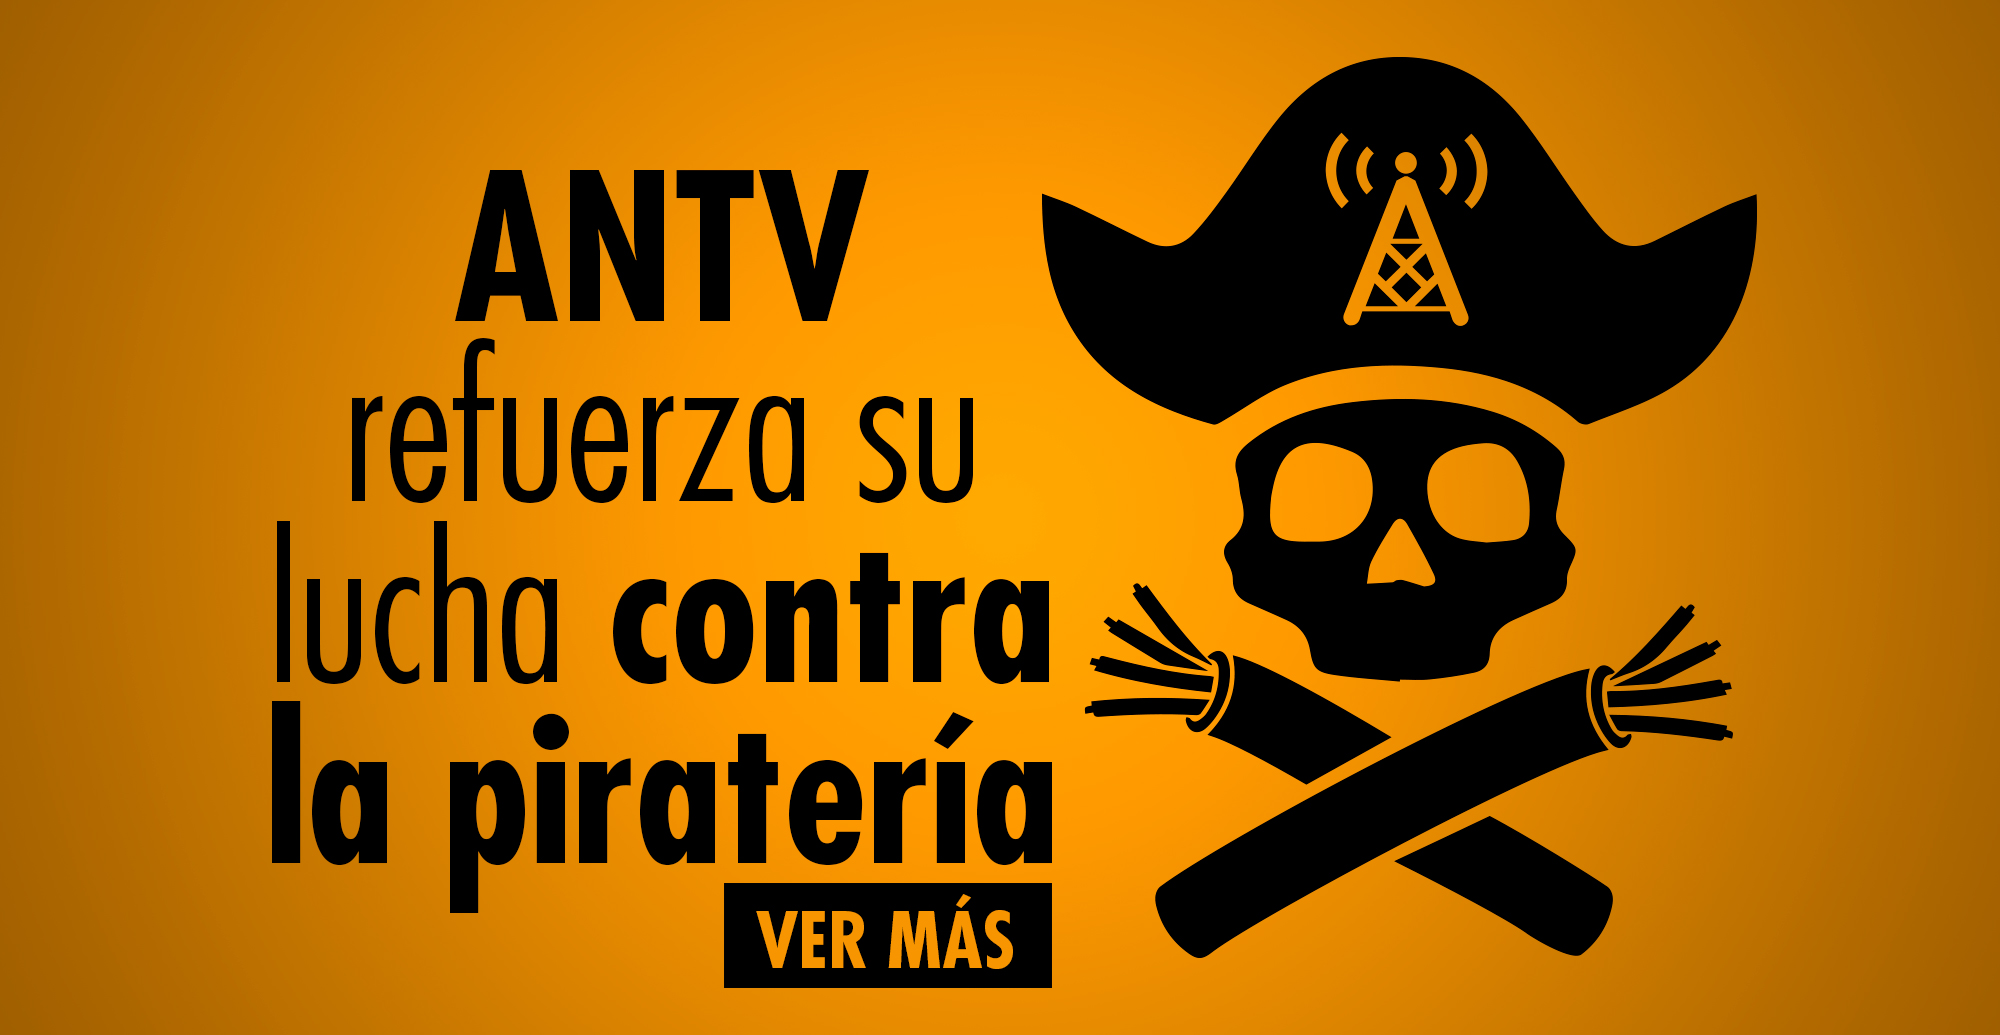 pirateria ANTV